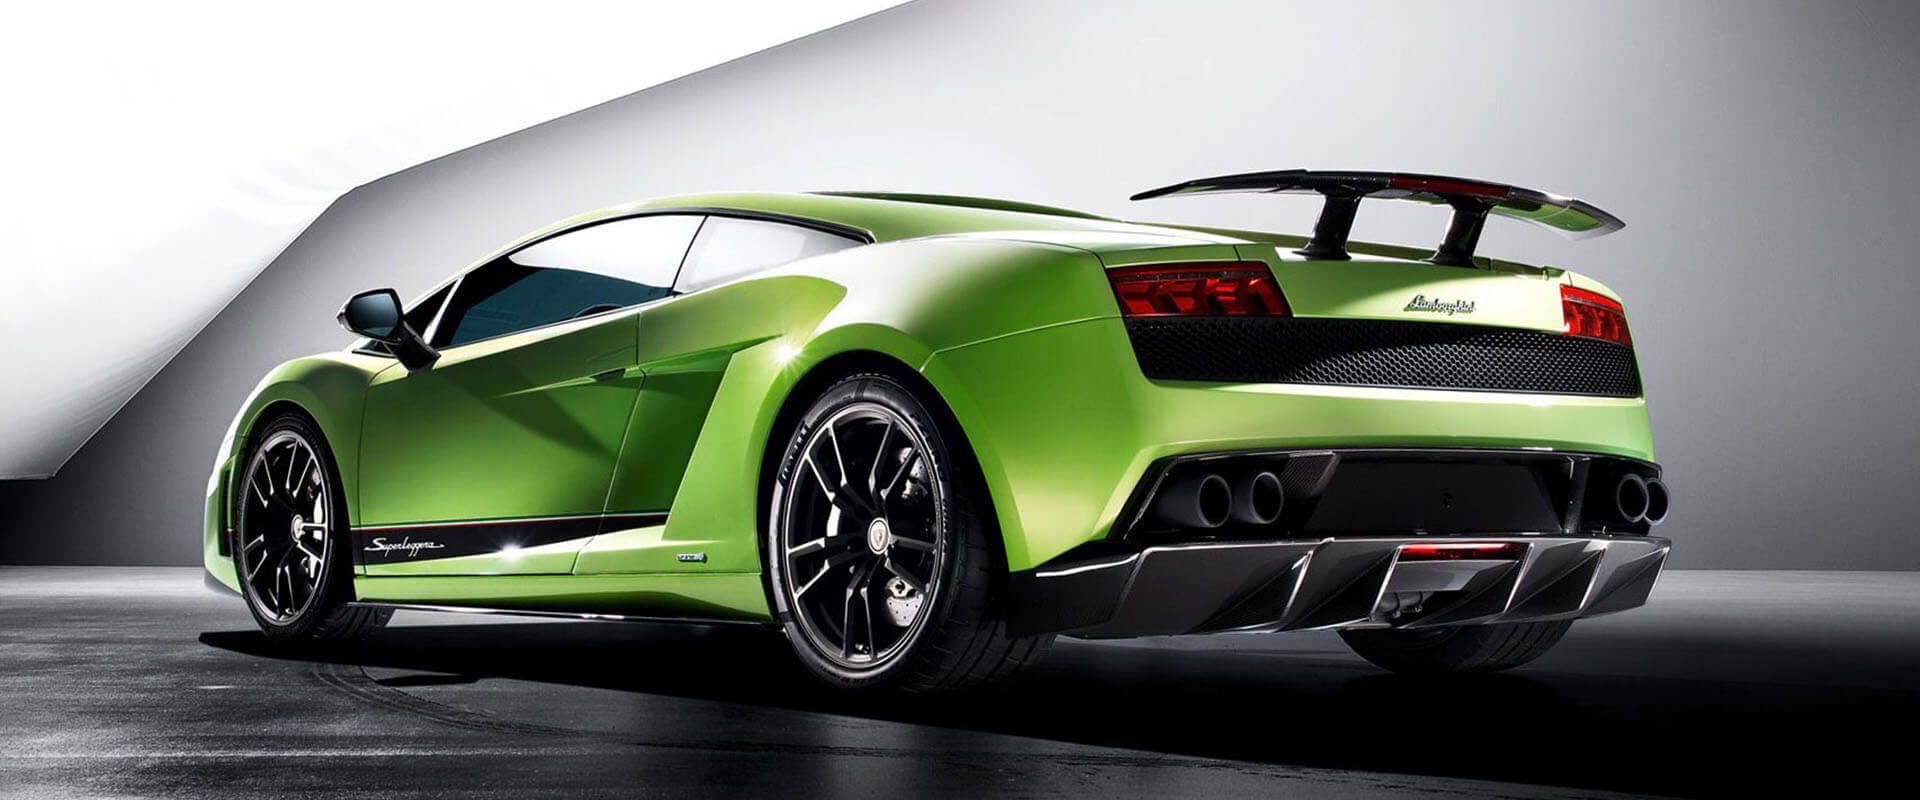 Lamborghini Gallardo – Uma história de sucesso